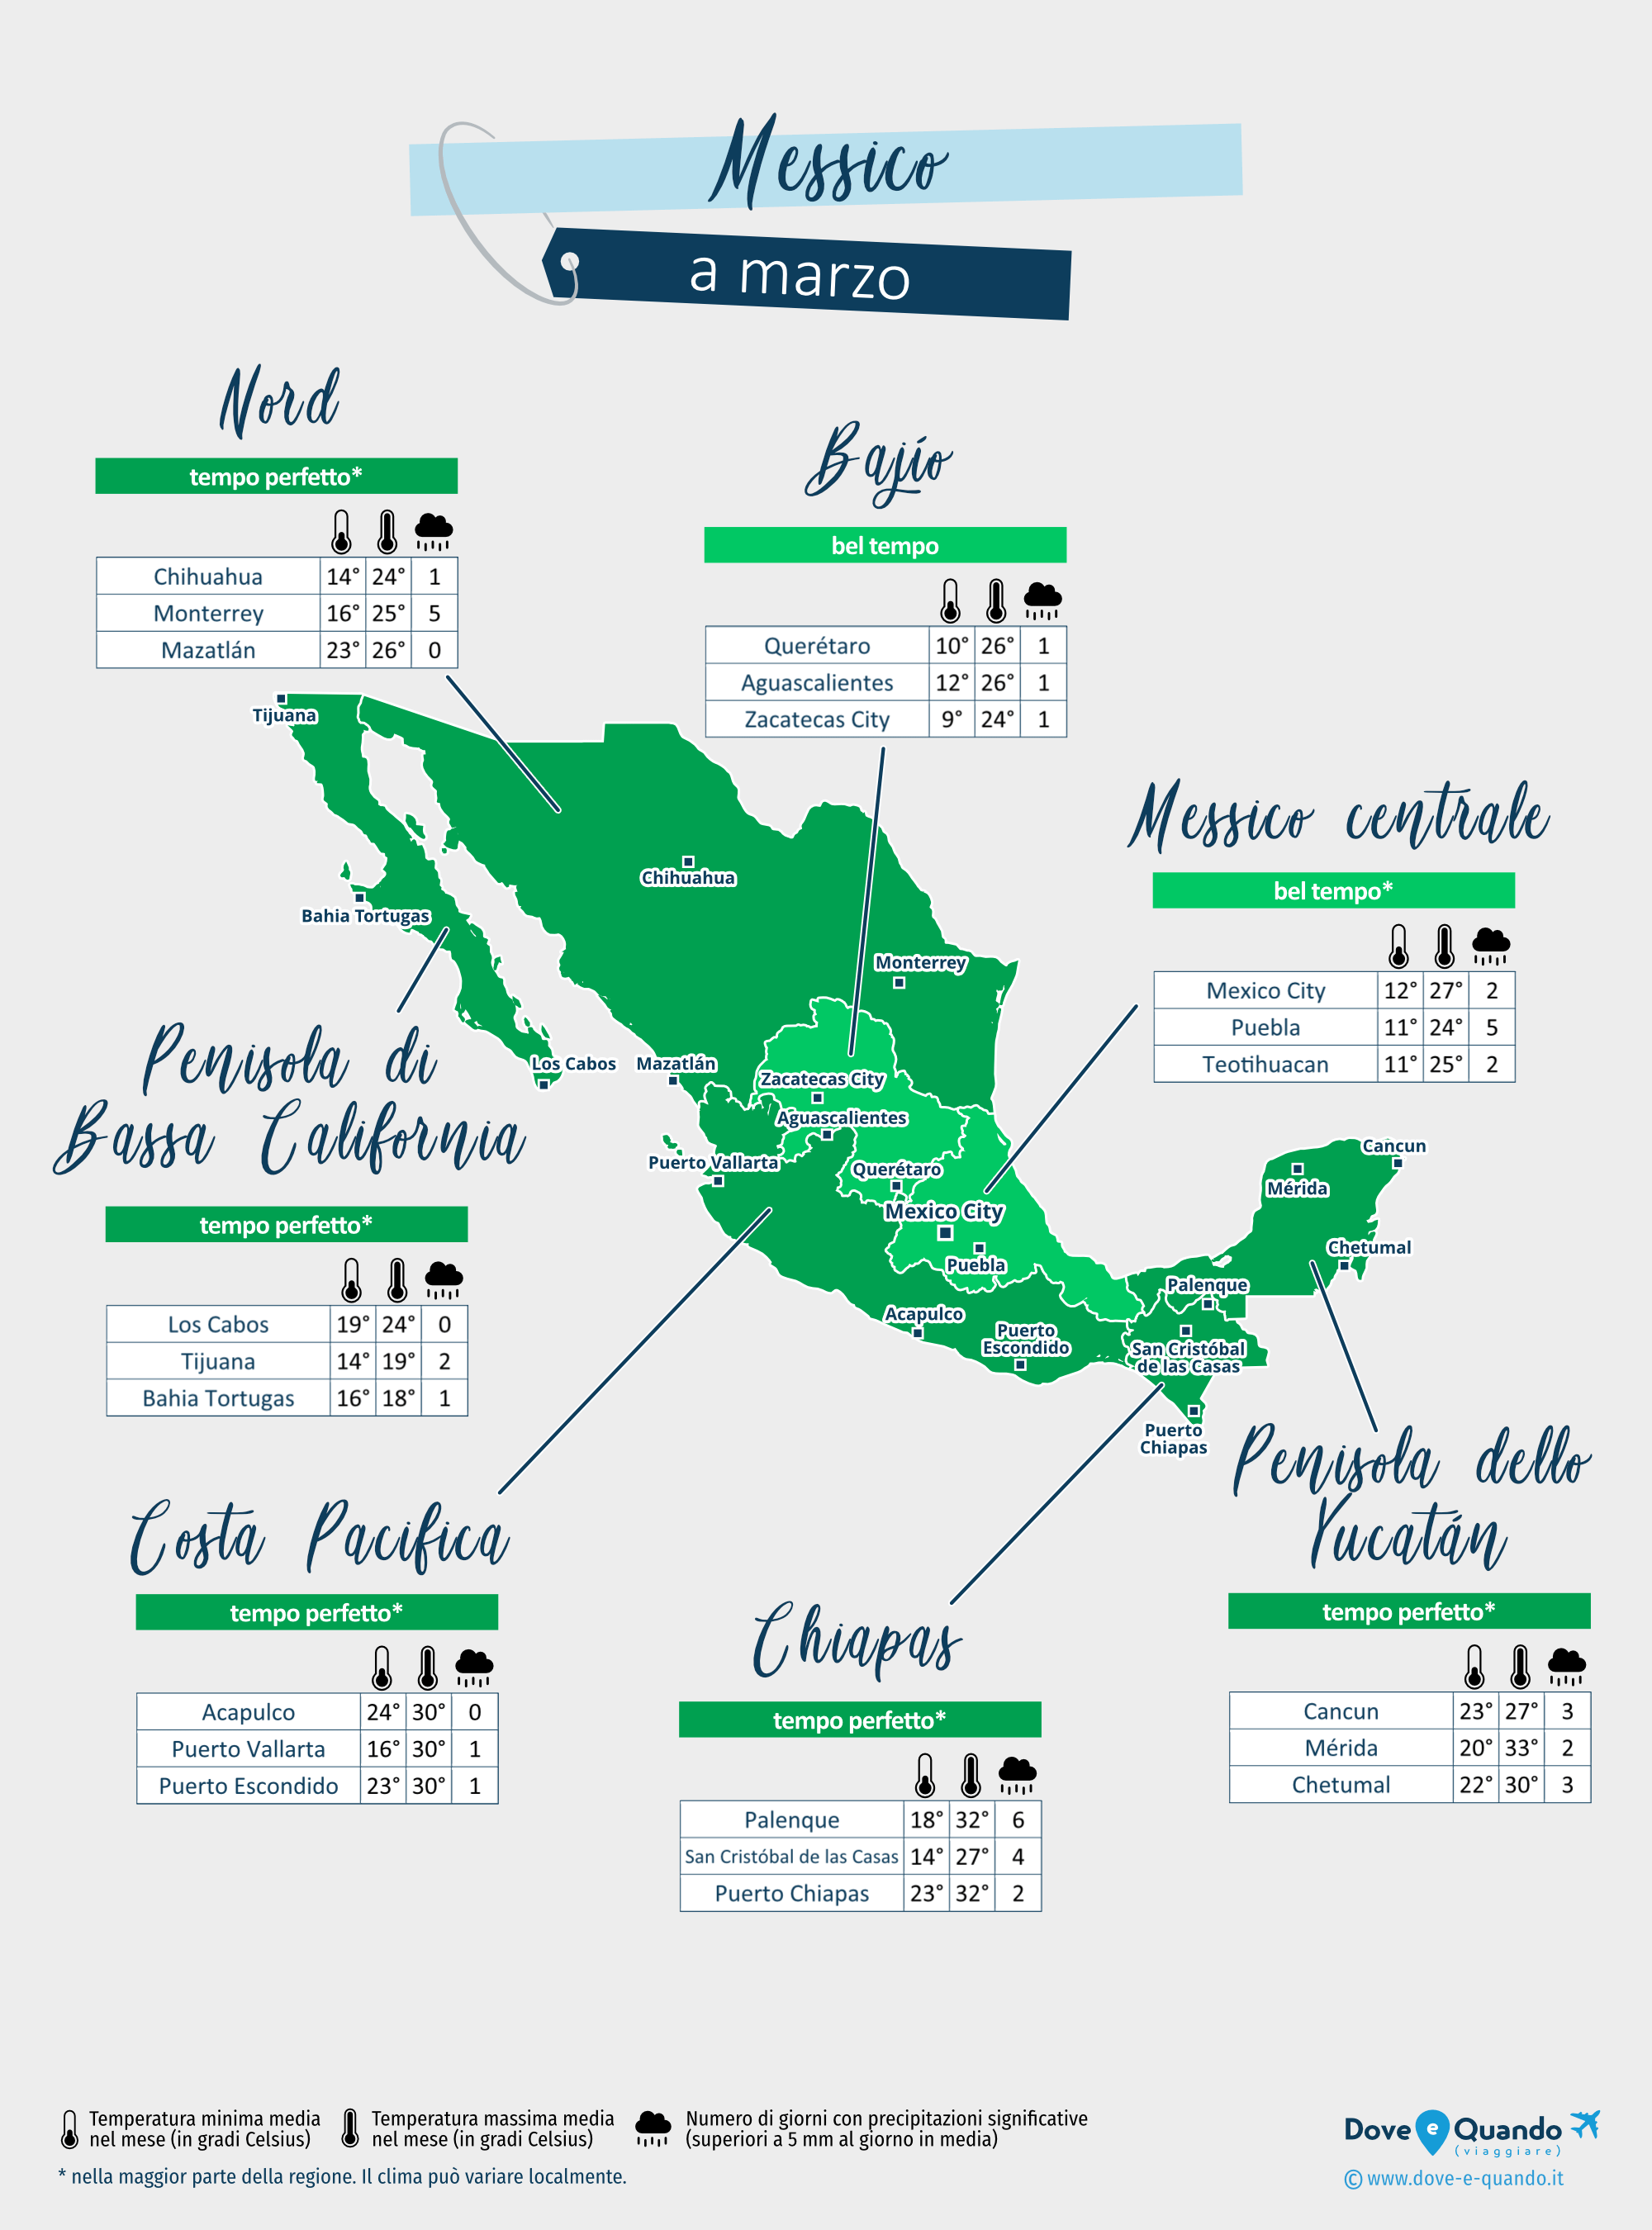 Messico: mappa del meteo a marzo nelle diverse regioni